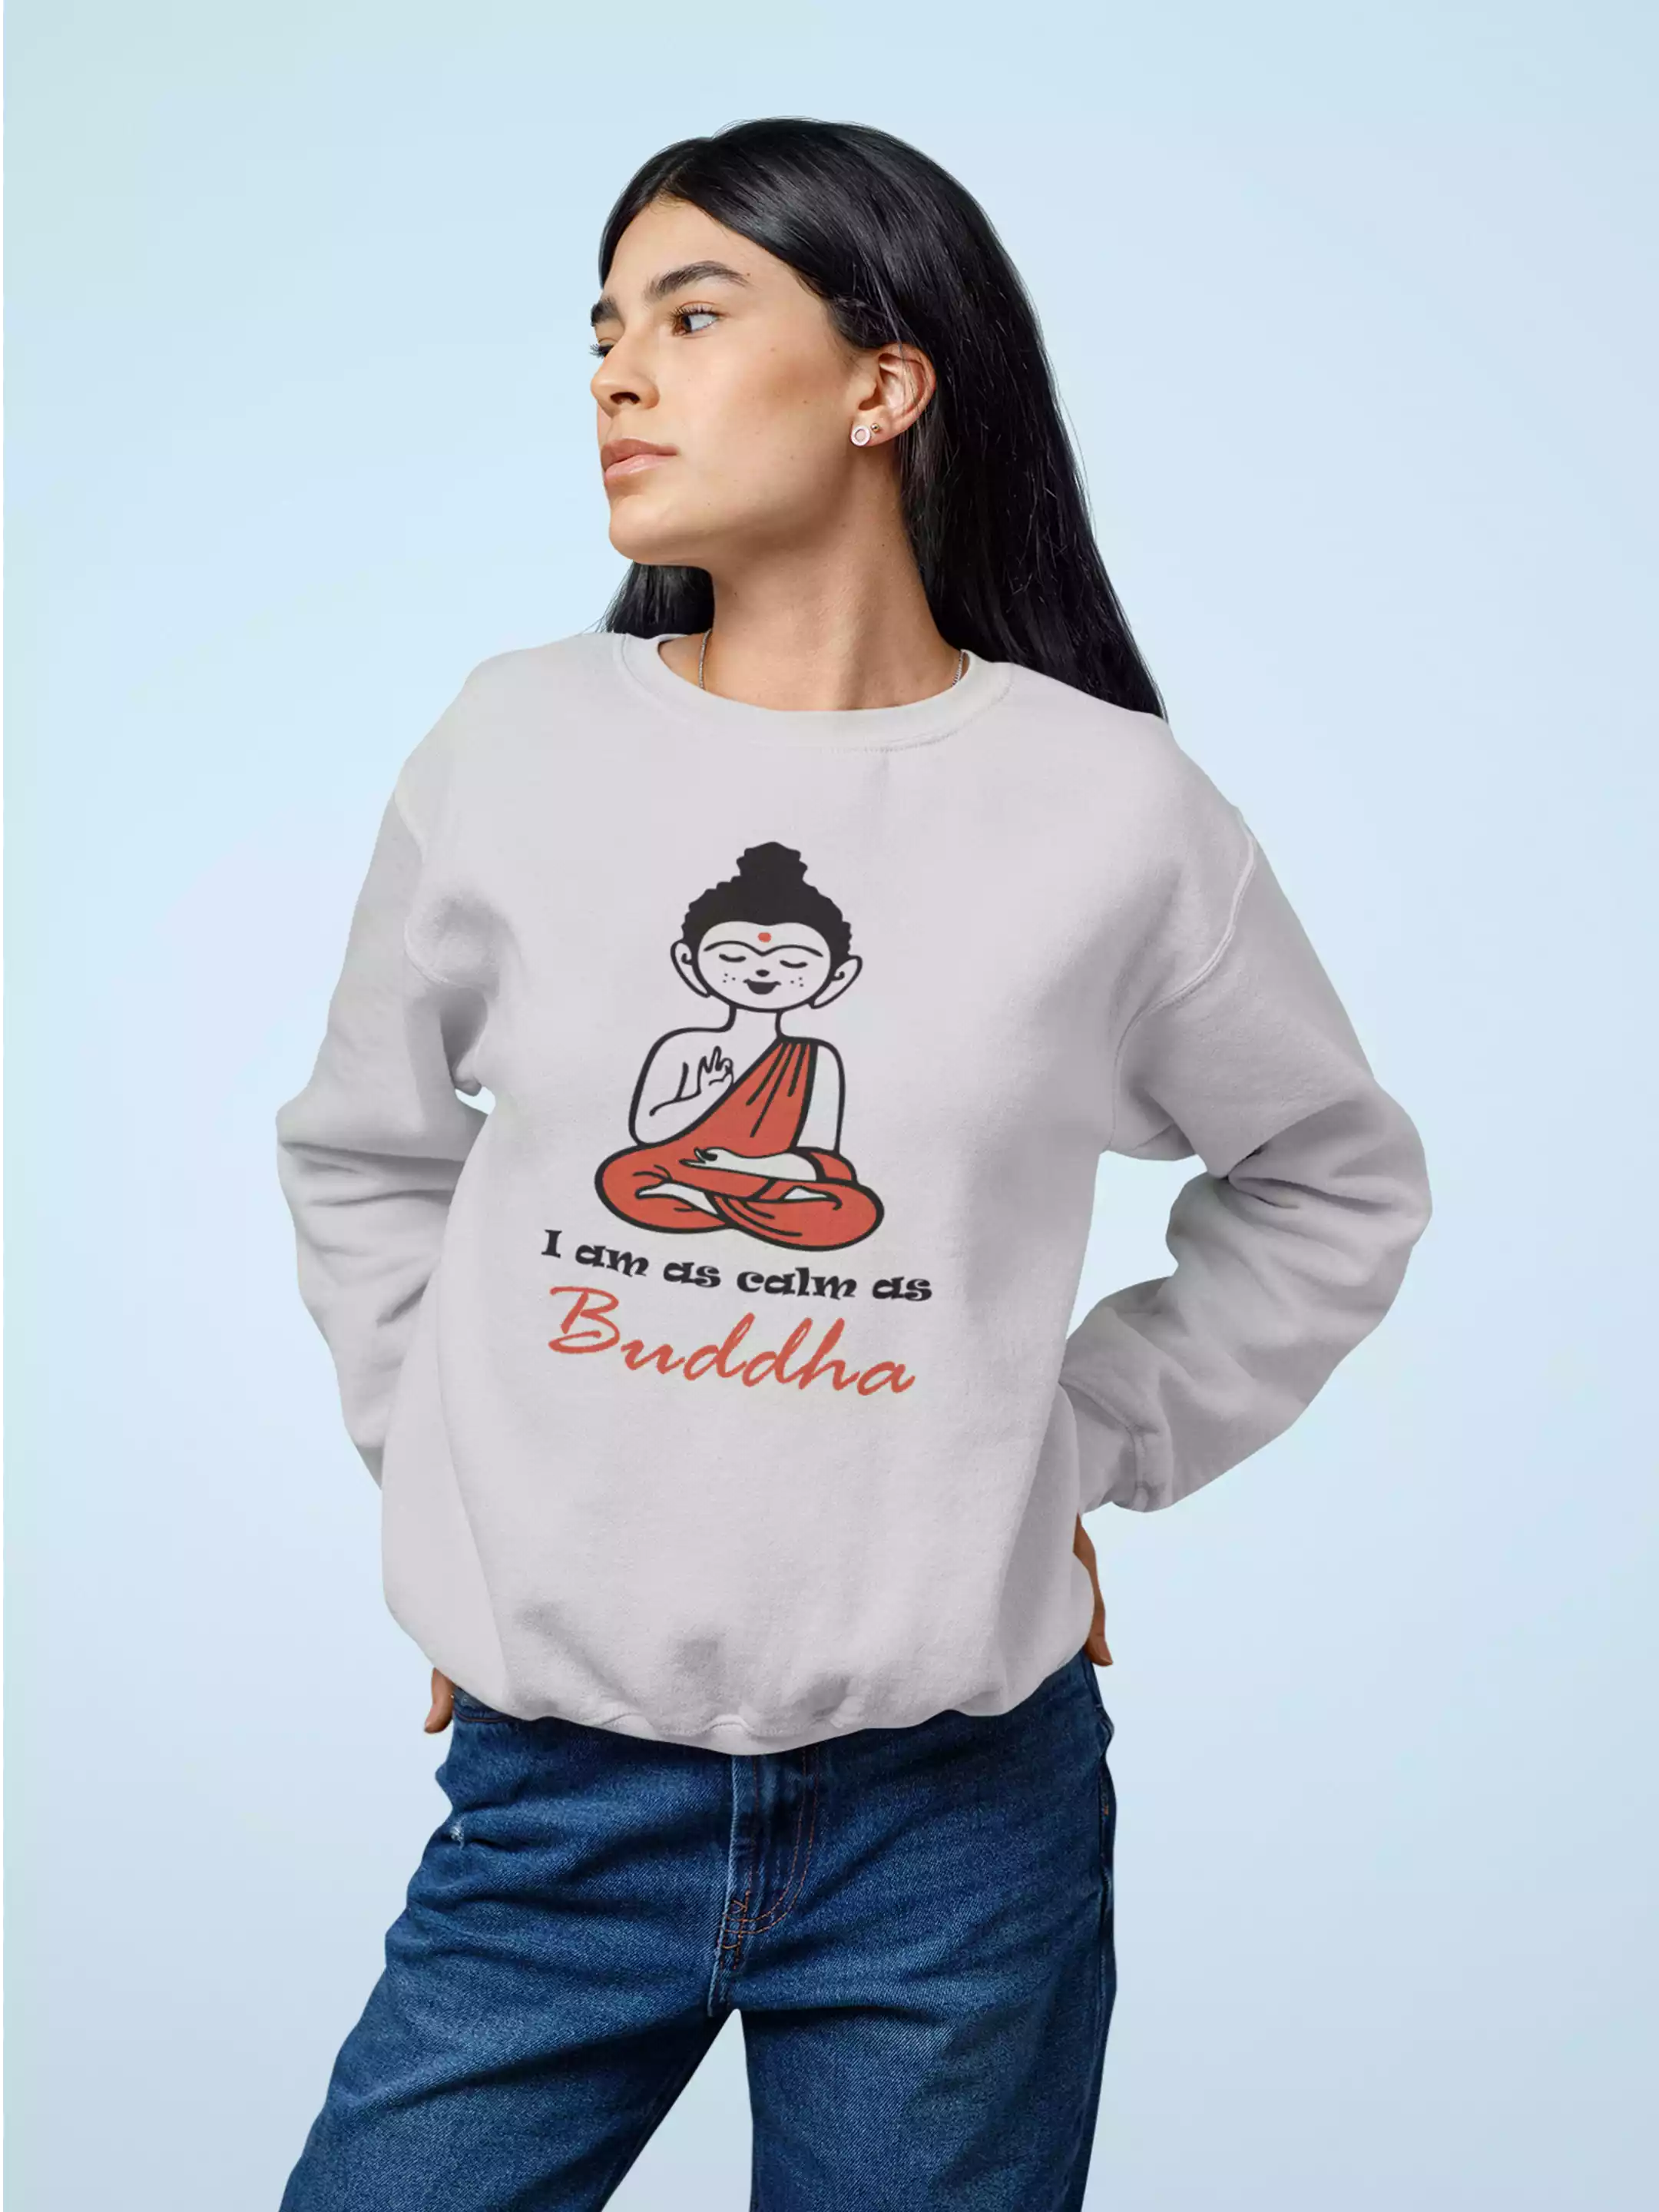 Calm As Buddha - Sukhiaatma Unisex Graphic Printed Sweatshirt